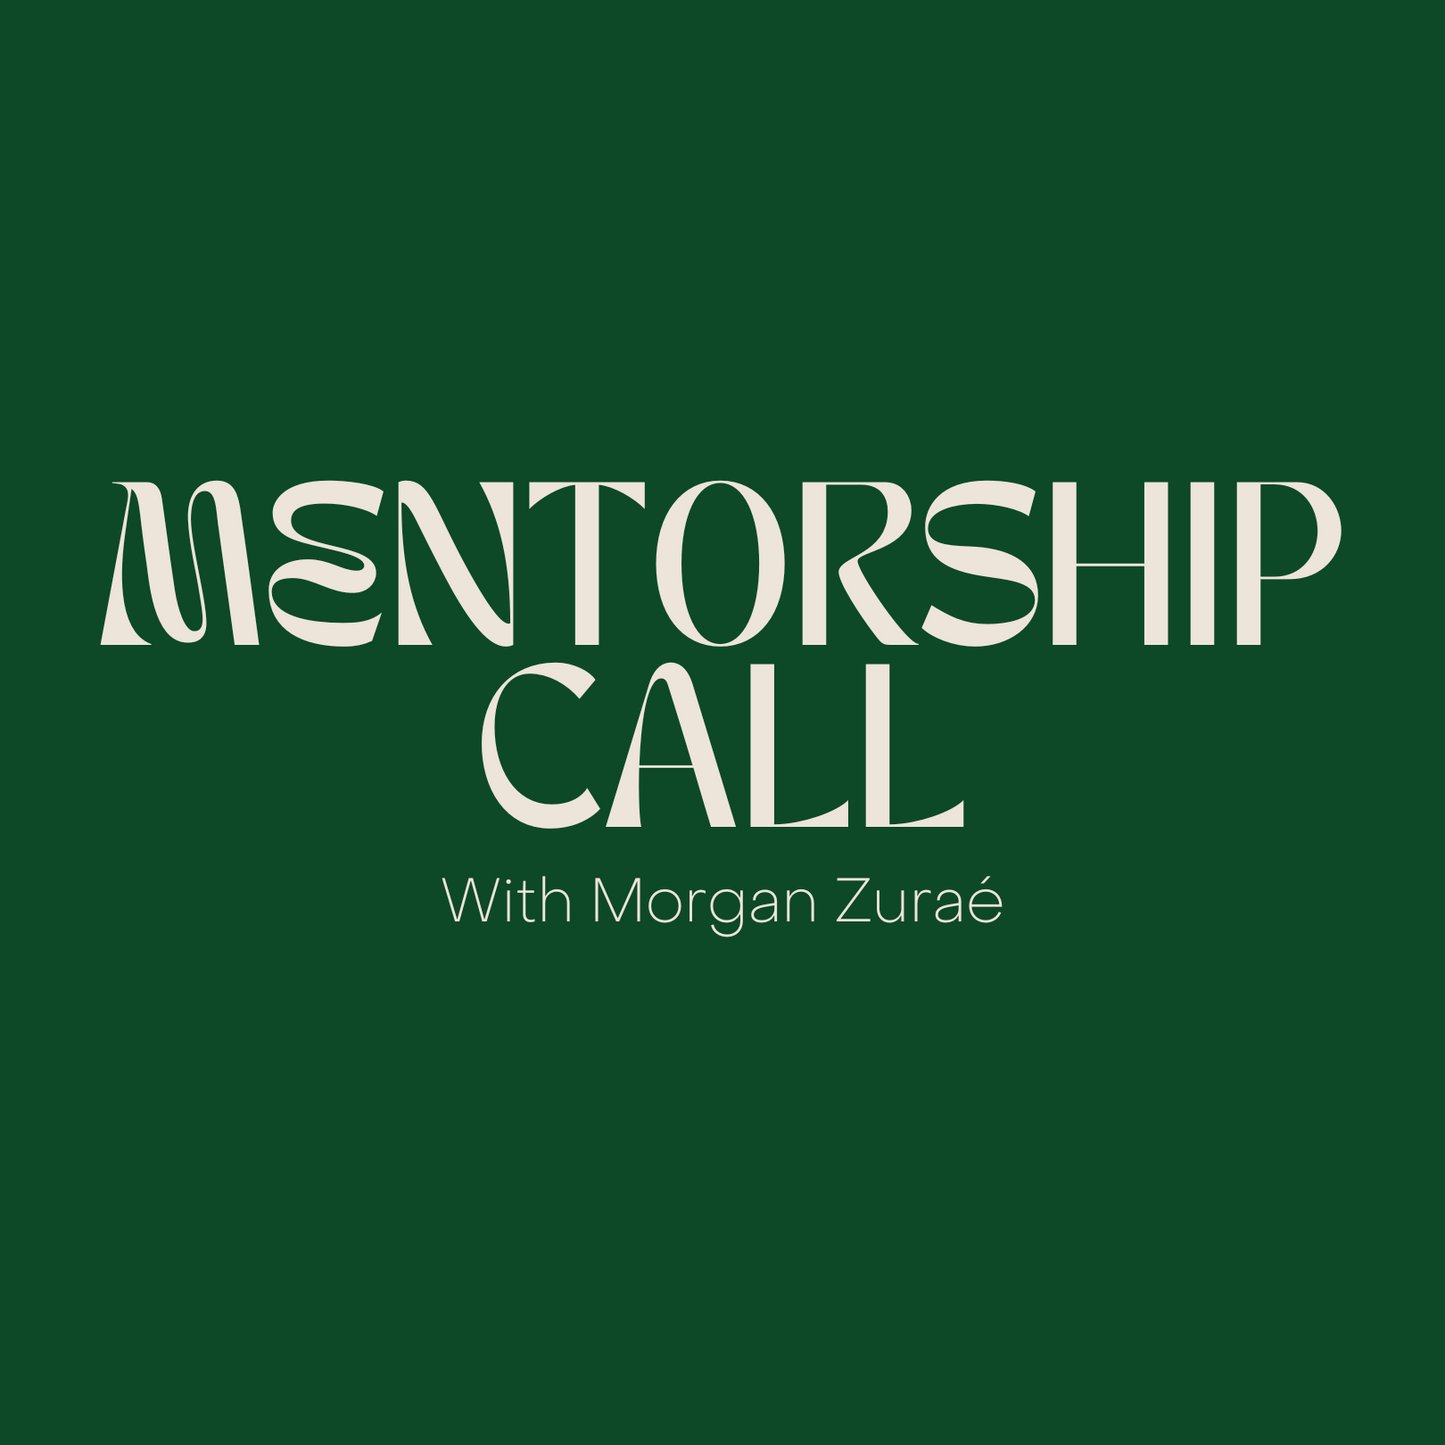 1:1 Mentorship Call